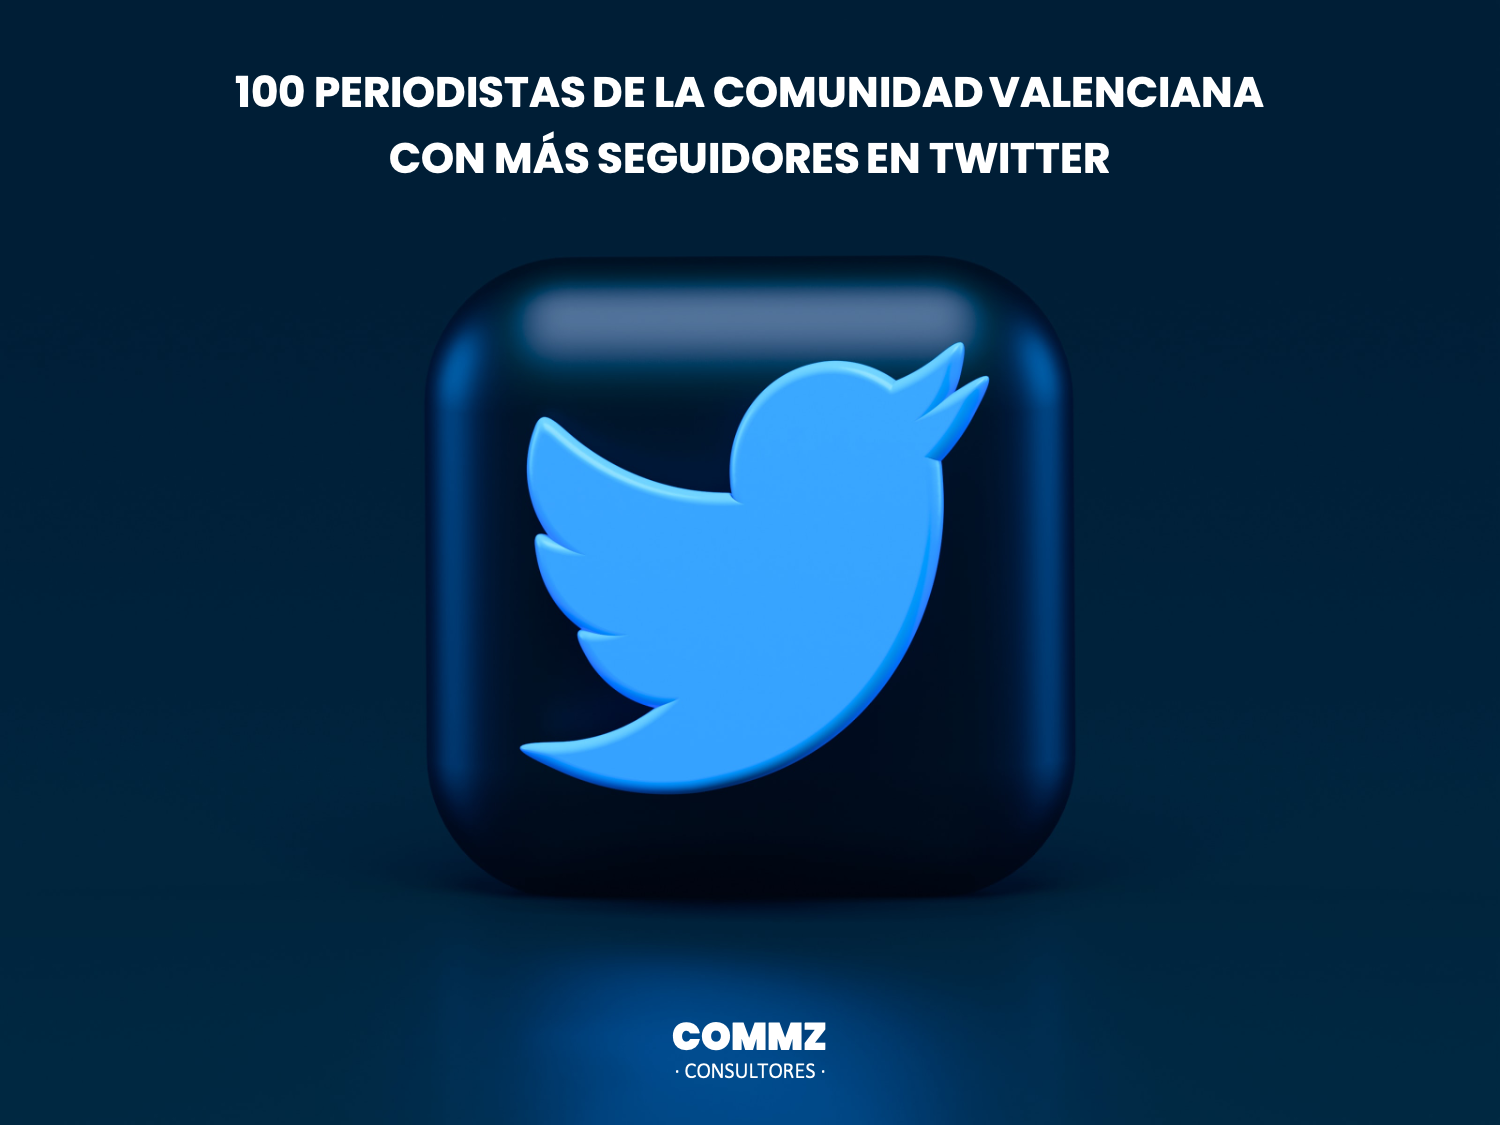 Solo 23 mujeres en el TOP100 Periodistas con más seguidores en Twitter de la Comunidad Valenciana